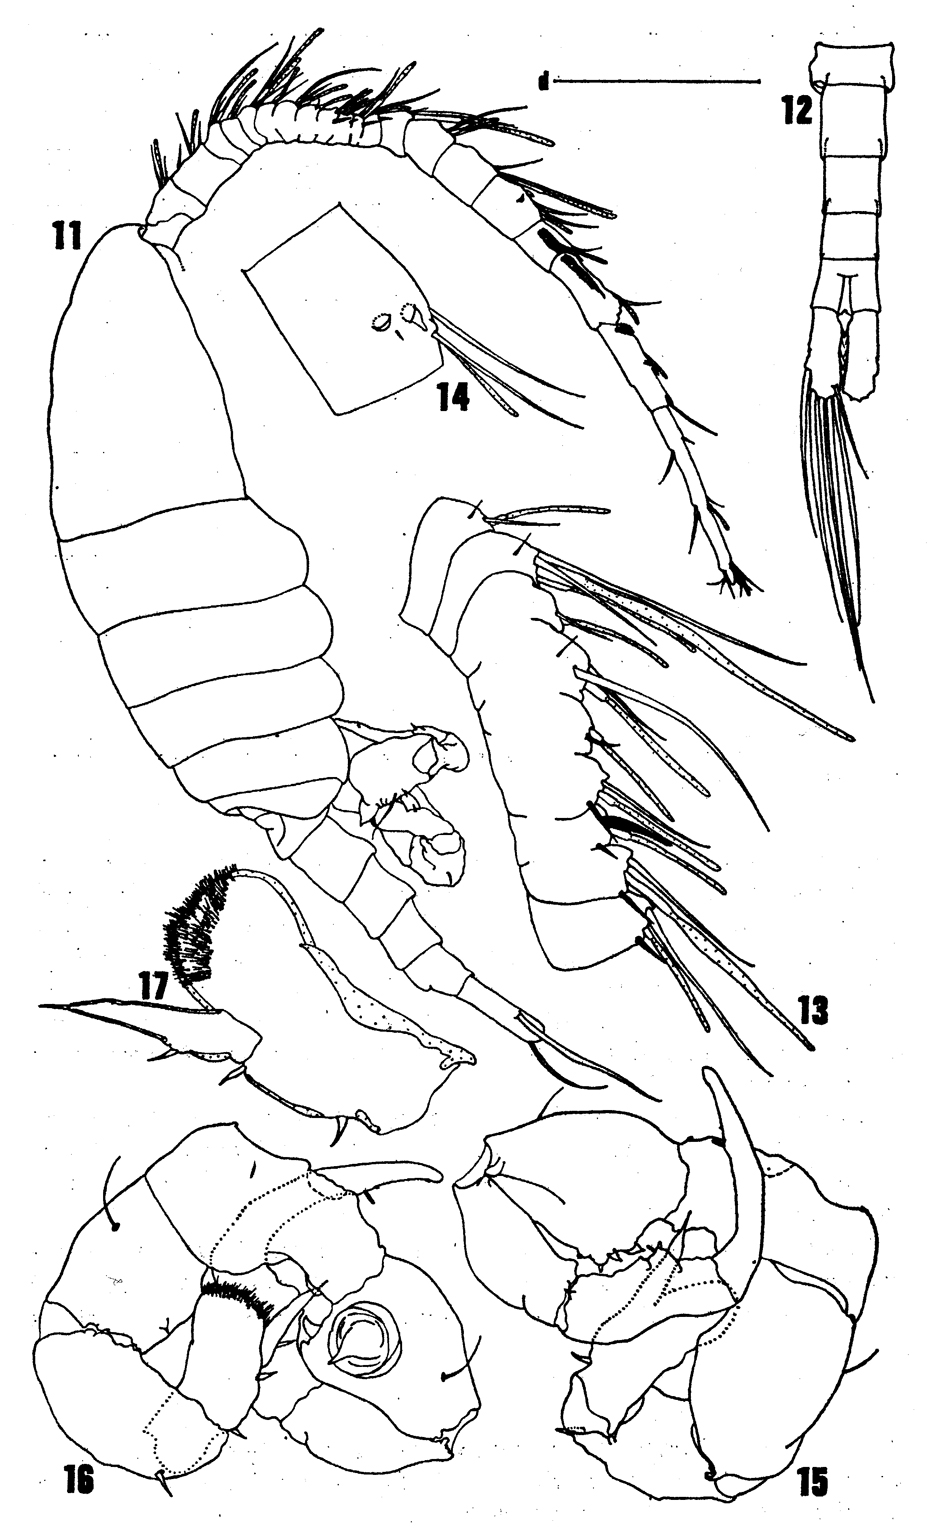 Espce Eurytemora richingsi - Planche 3 de figures morphologiques